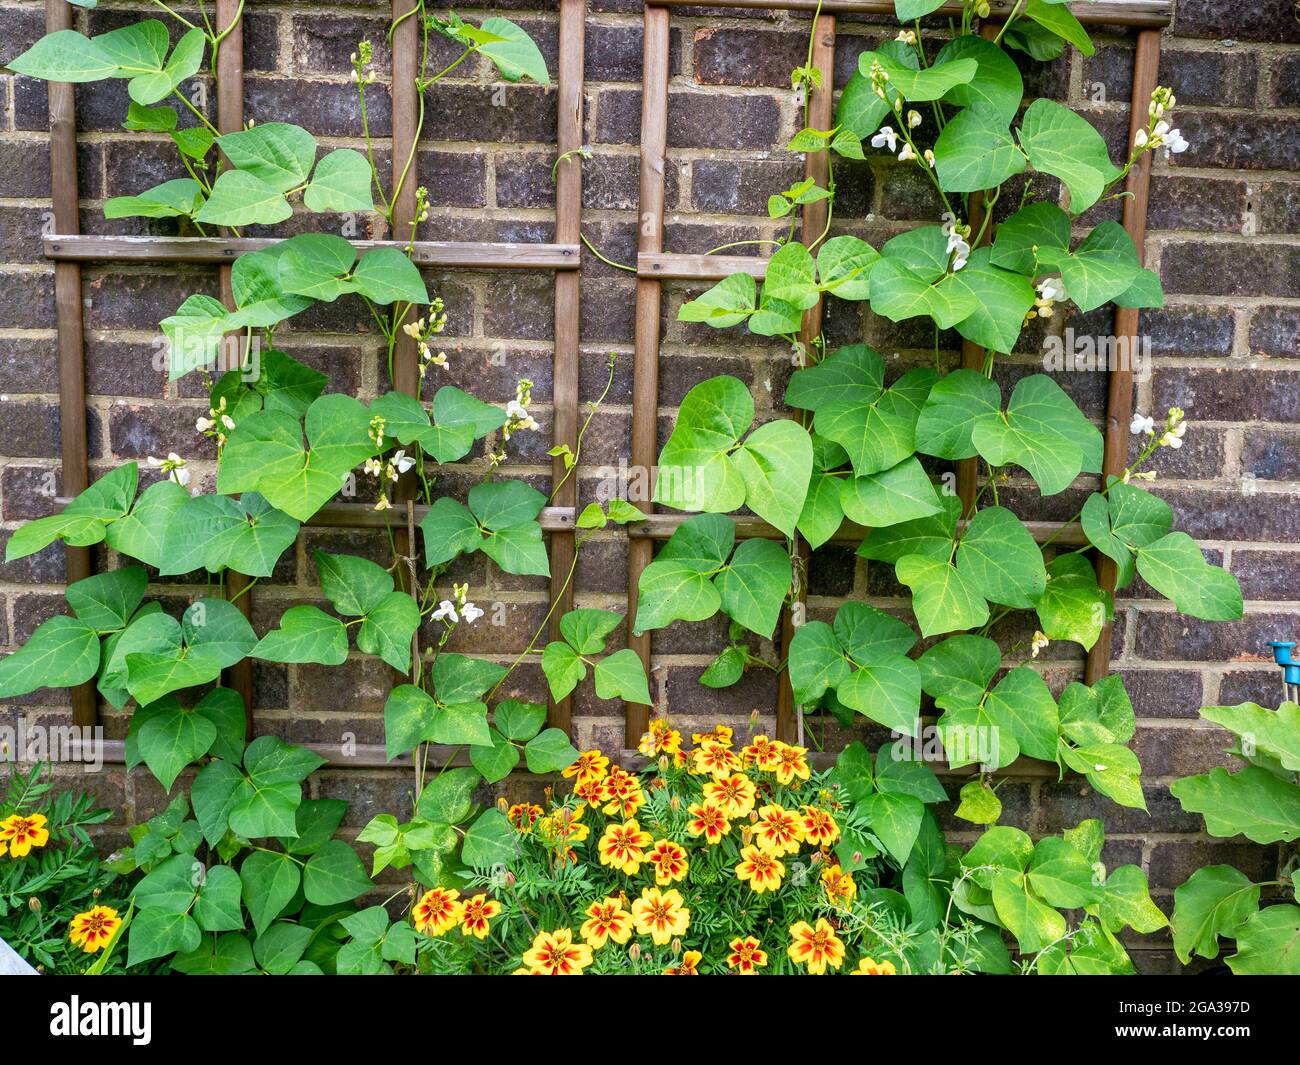 Auf einem hölzernen Gitter kletternde Bohnenpflanzen Stockfoto